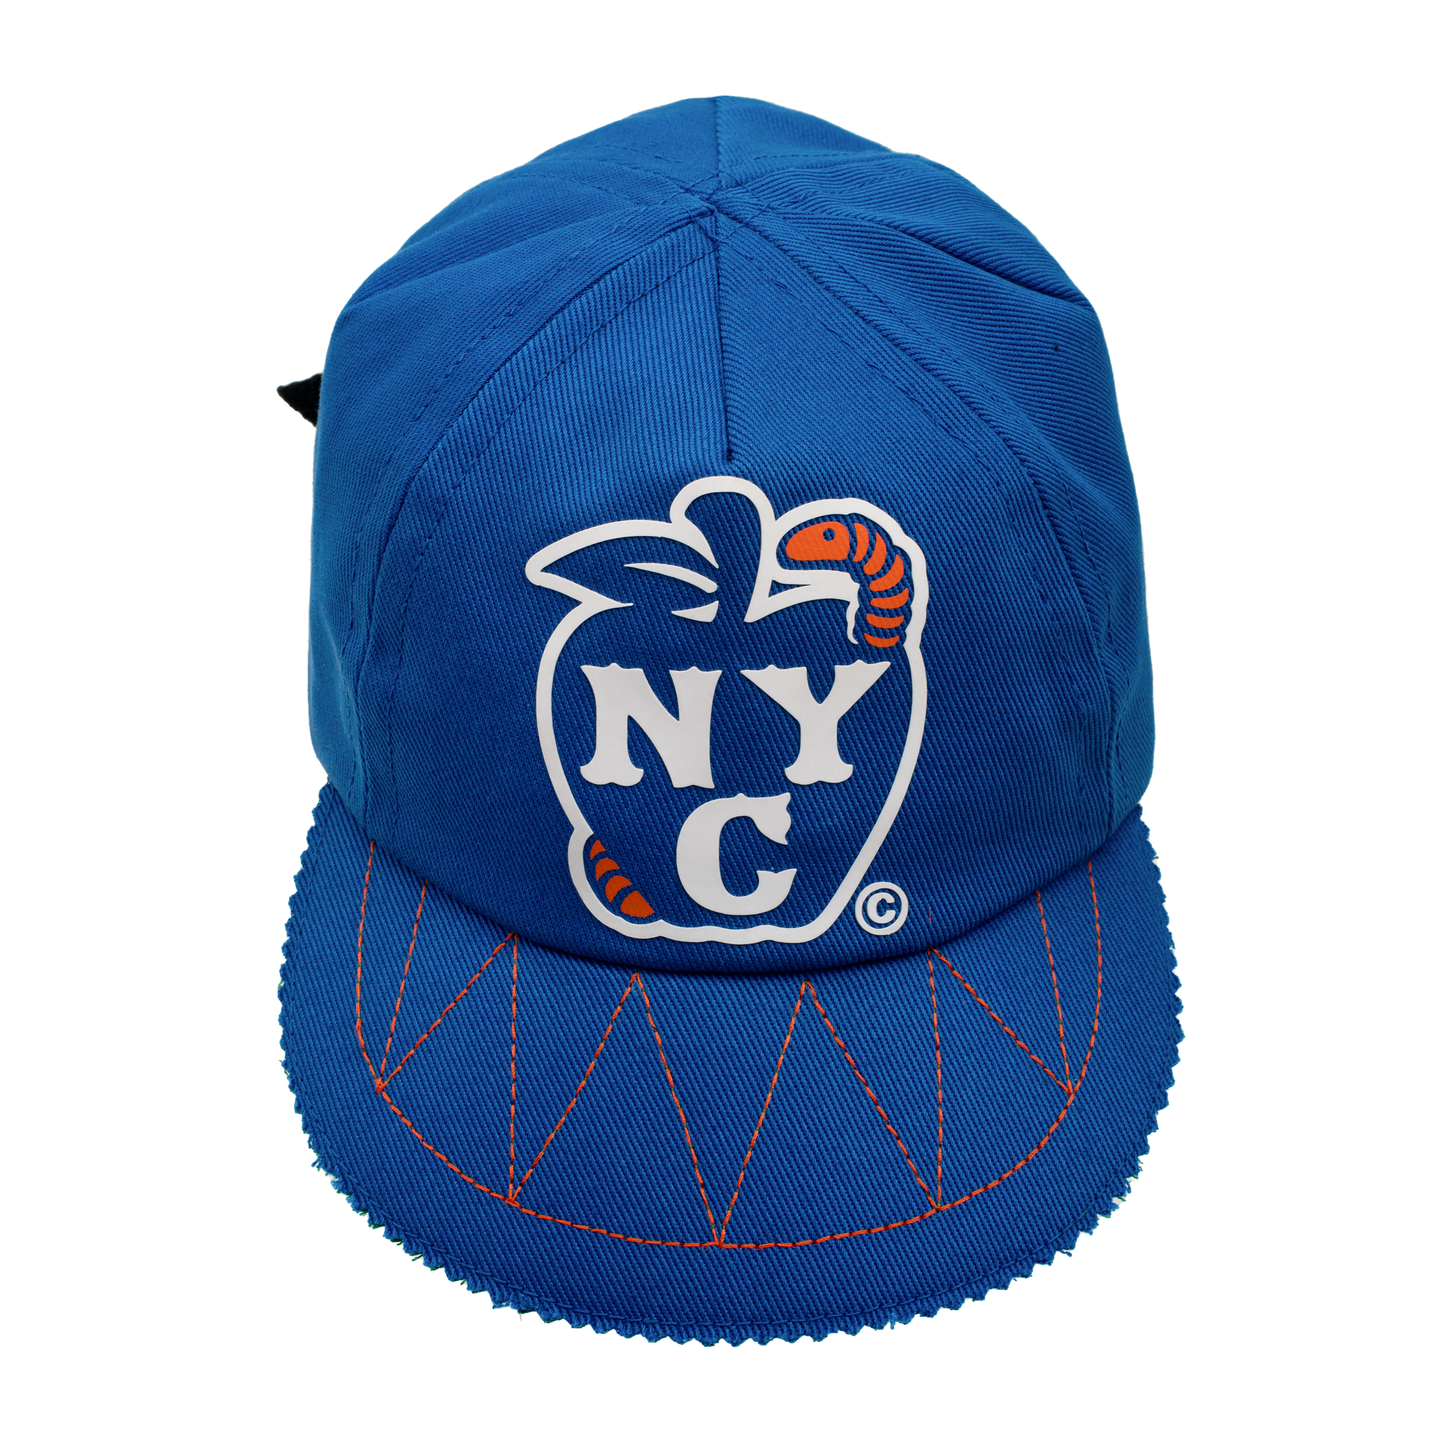 DECONSTRKT "NYC APPLE" (Old York) CAP